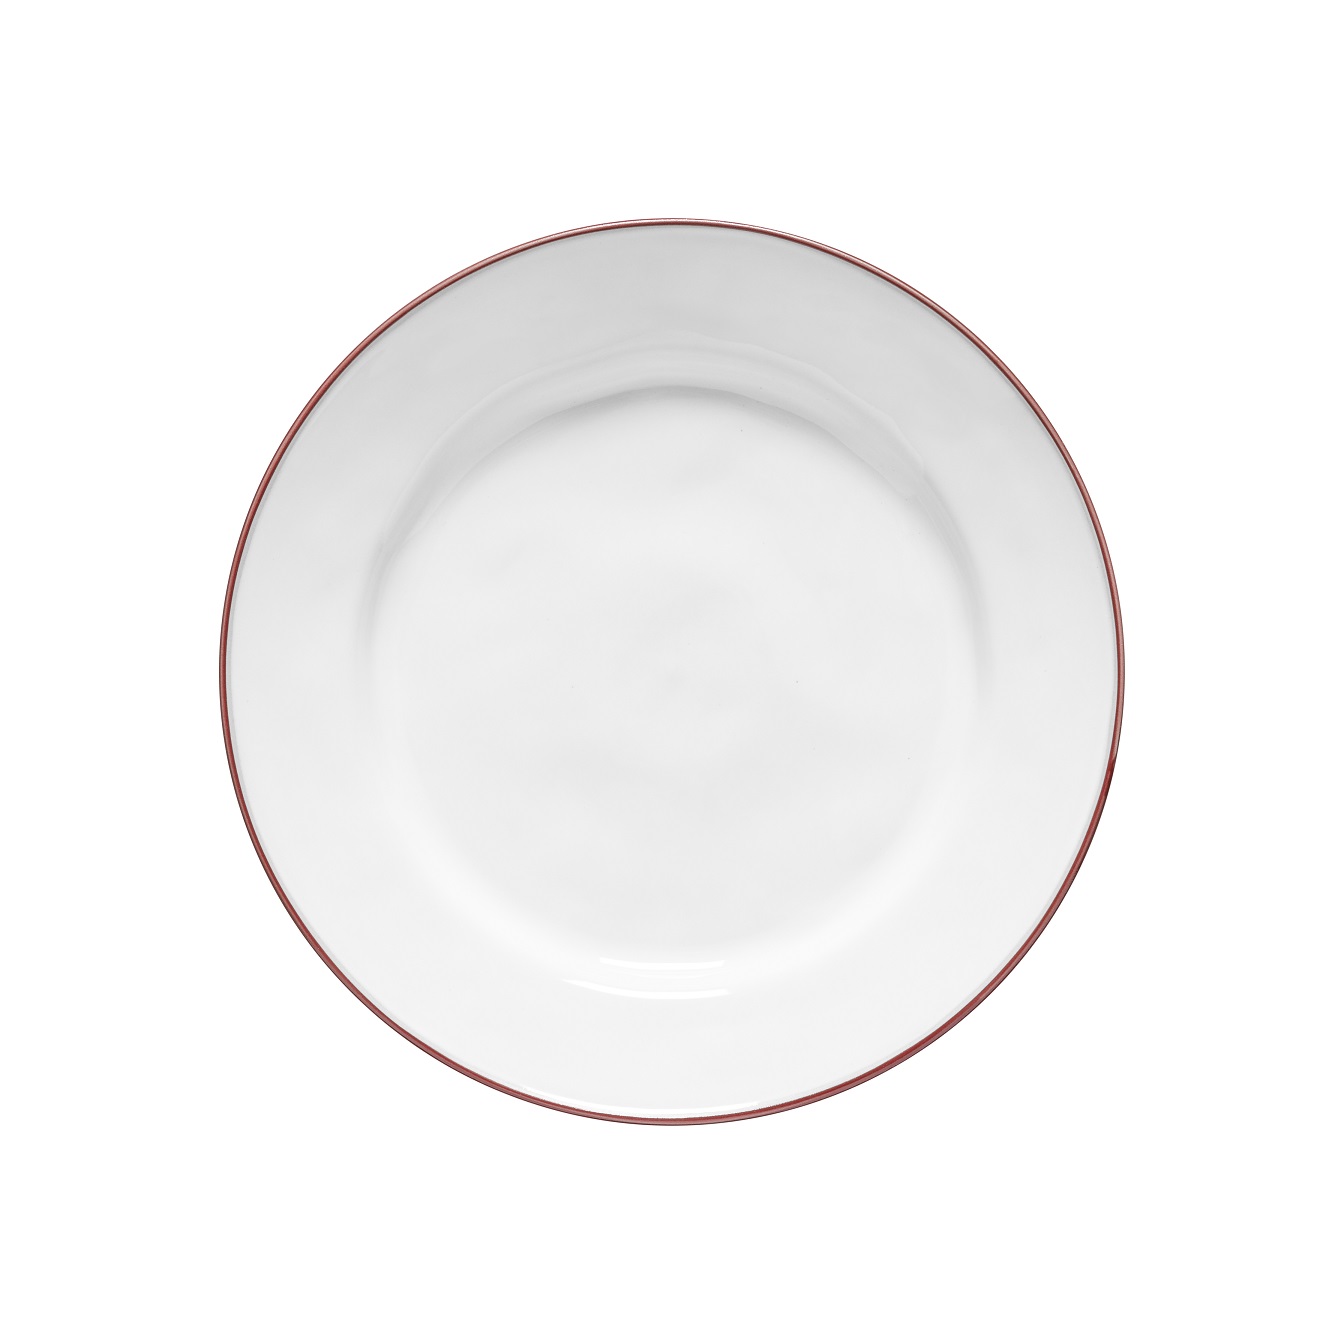 Beja White/red Dinner Plate 28cm Gift